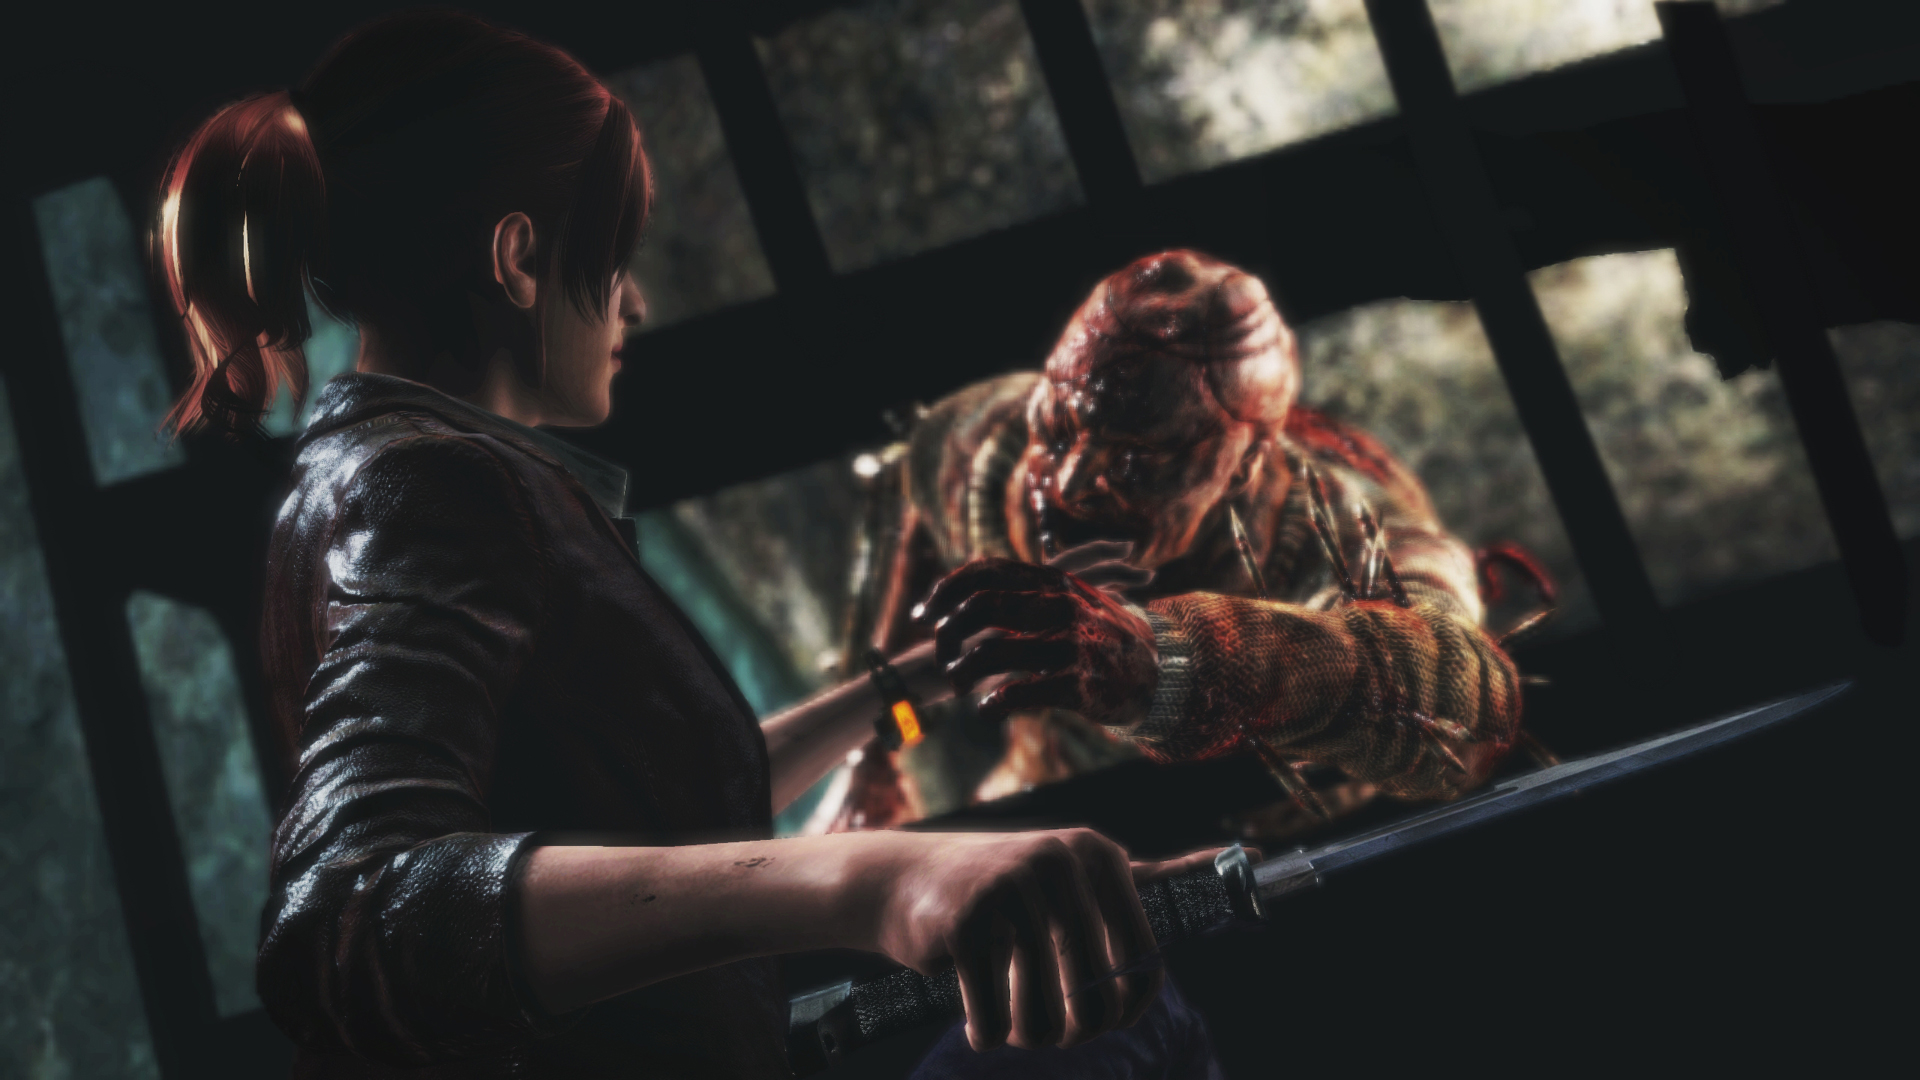 Tải Game Resident Evil: Revelations 2 full offline PC Ss_4977dc5b787f0818b06d1f3589858dce1ad358eb.1920x1080